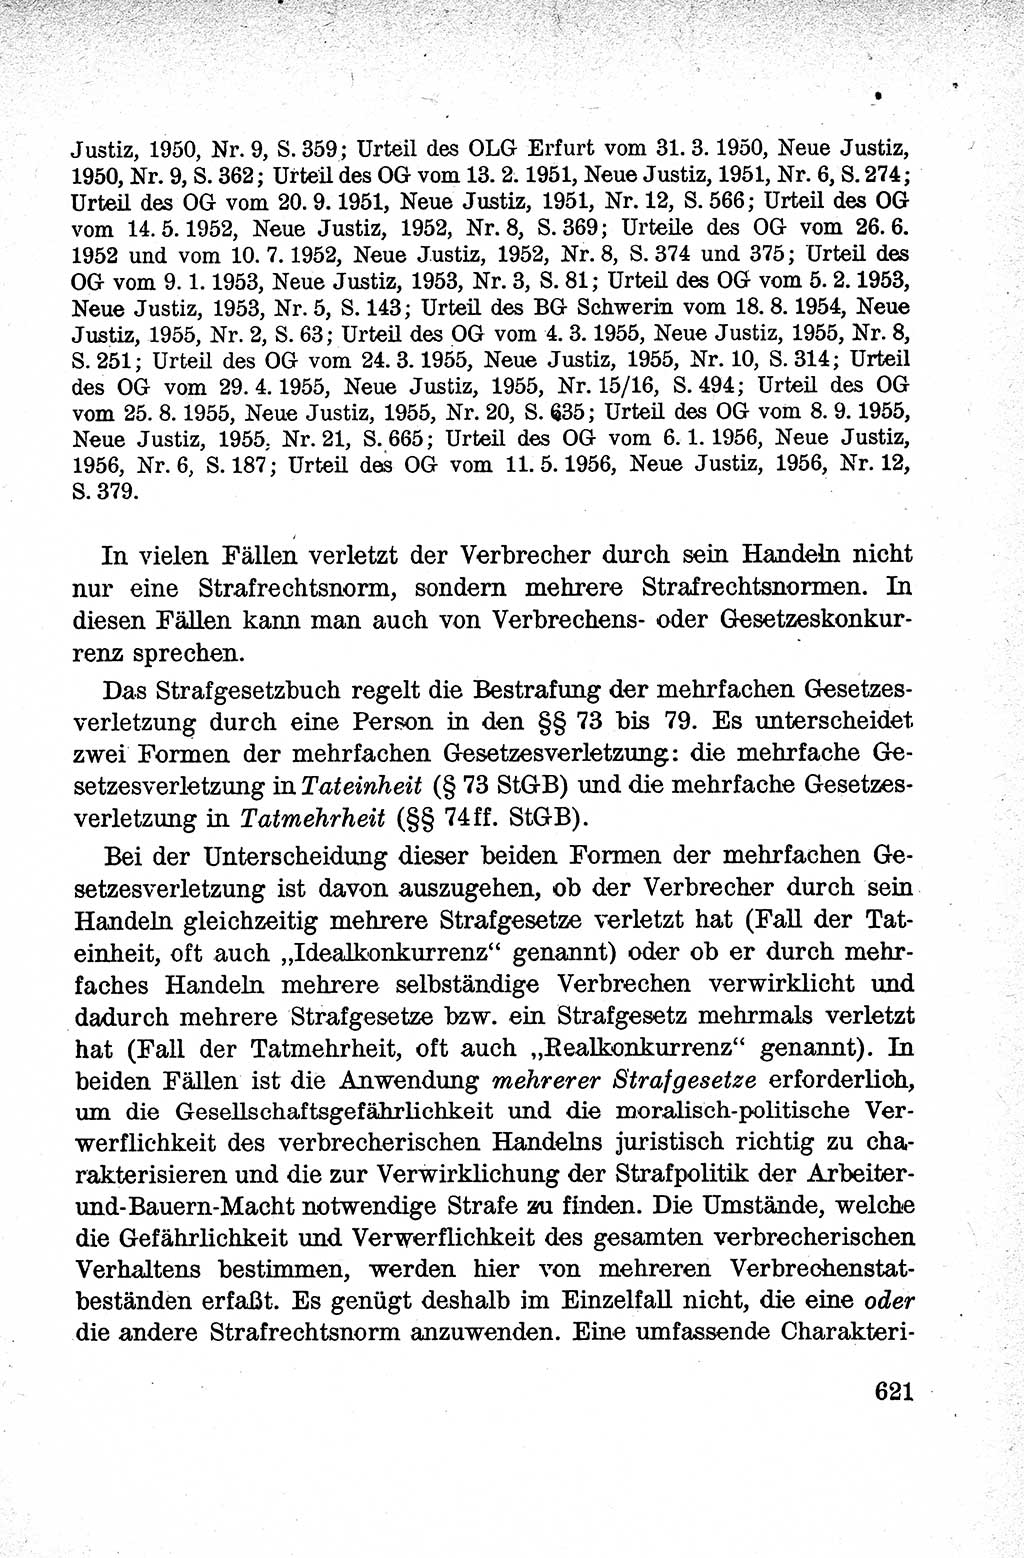 Lehrbuch des Strafrechts der Deutschen Demokratischen Republik (DDR), Allgemeiner Teil 1959, Seite 621 (Lb. Strafr. DDR AT 1959, S. 621)